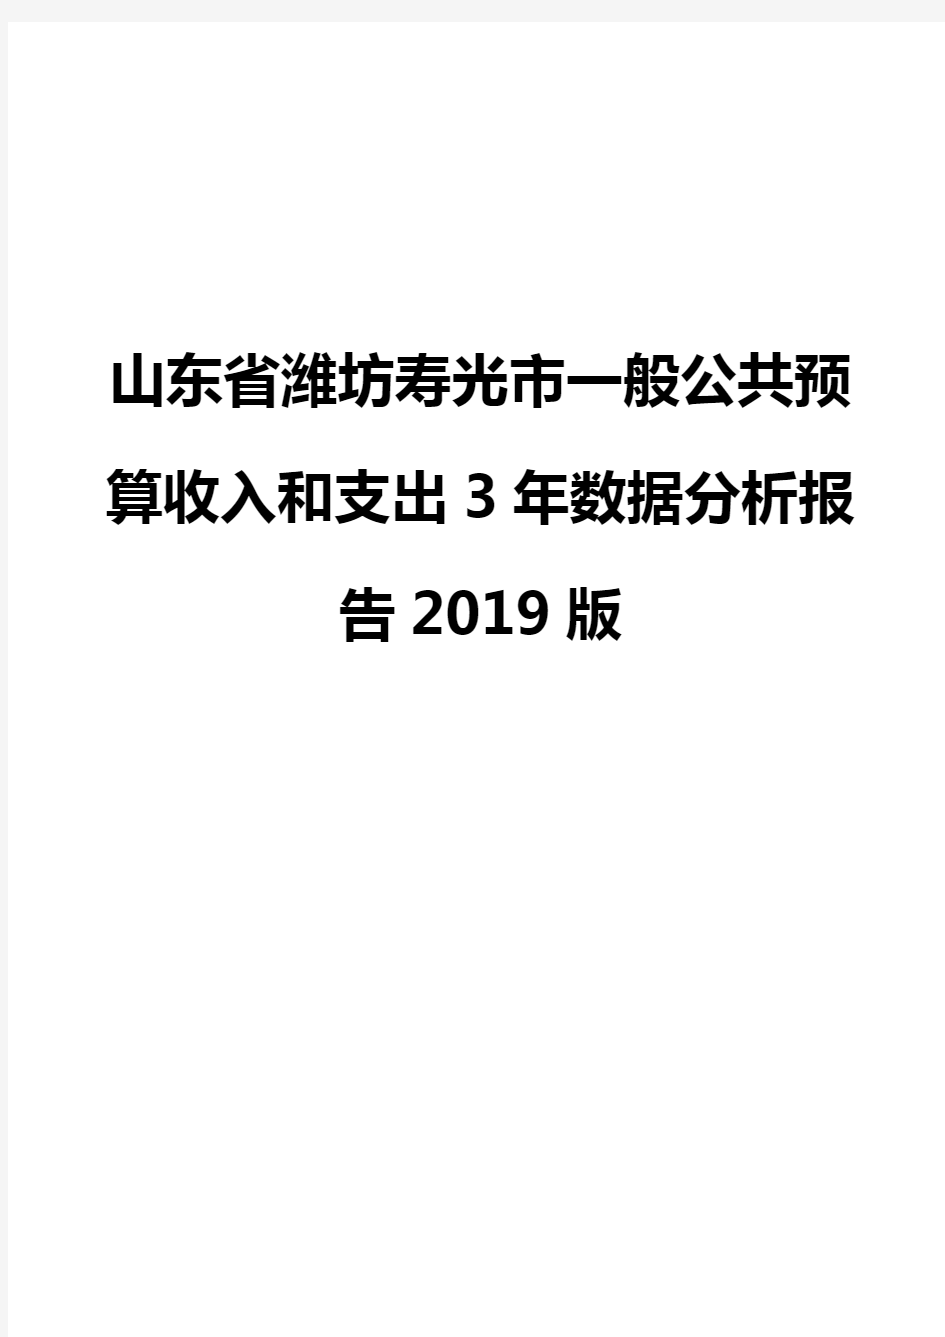 山东省潍坊寿光市一般公共预算收入和支出3年数据分析报告2019版